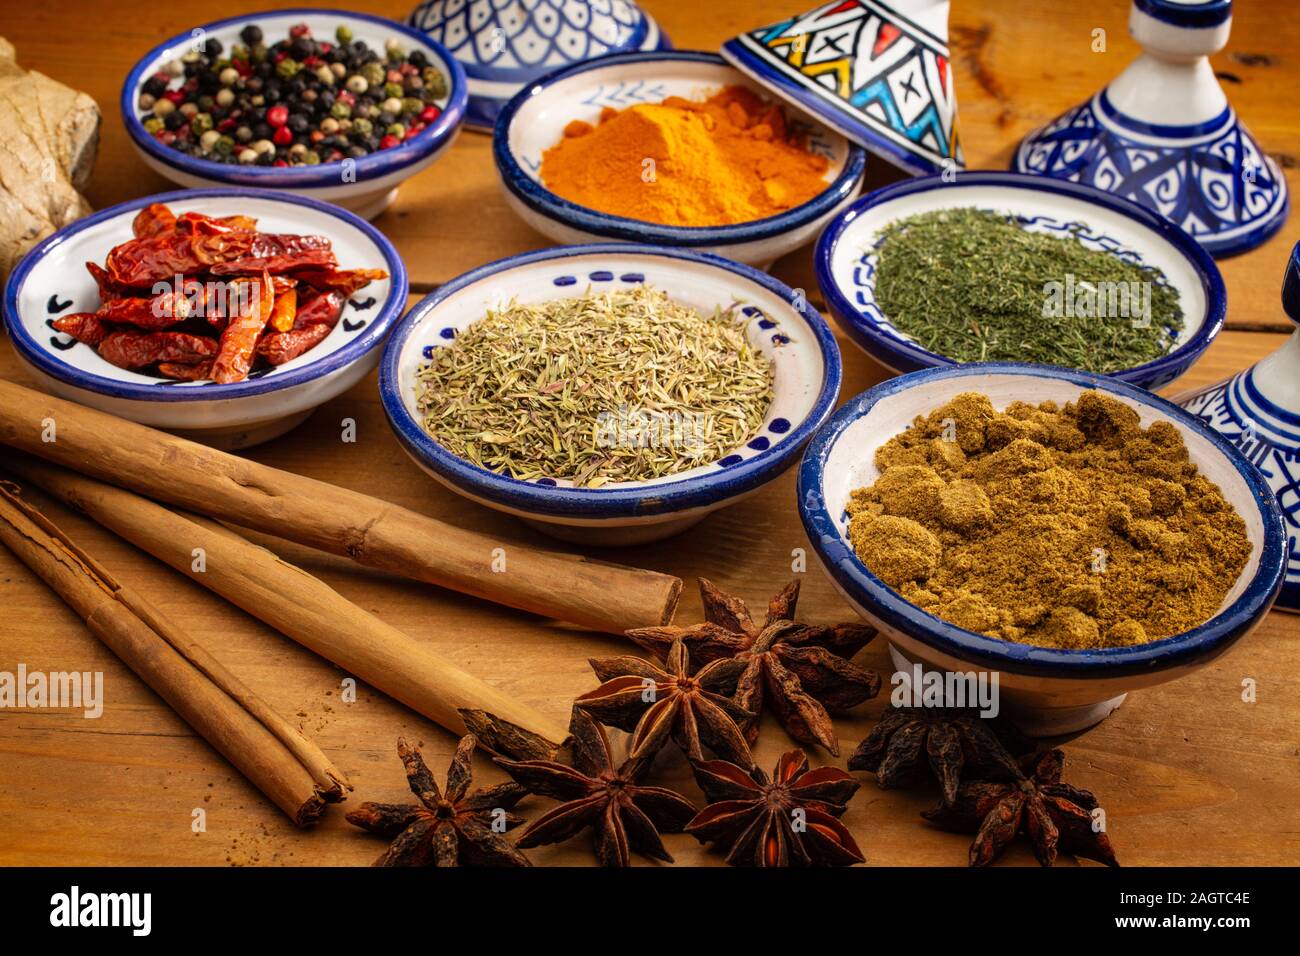 Alimentation saine. Les épices dans des contenants en céramique typique du Maroc sur une vieille table en bois. Poivre de couleur, le curcuma, le piment de cayenne, la cannelle, gingembre, cumin, star Banque D'Images